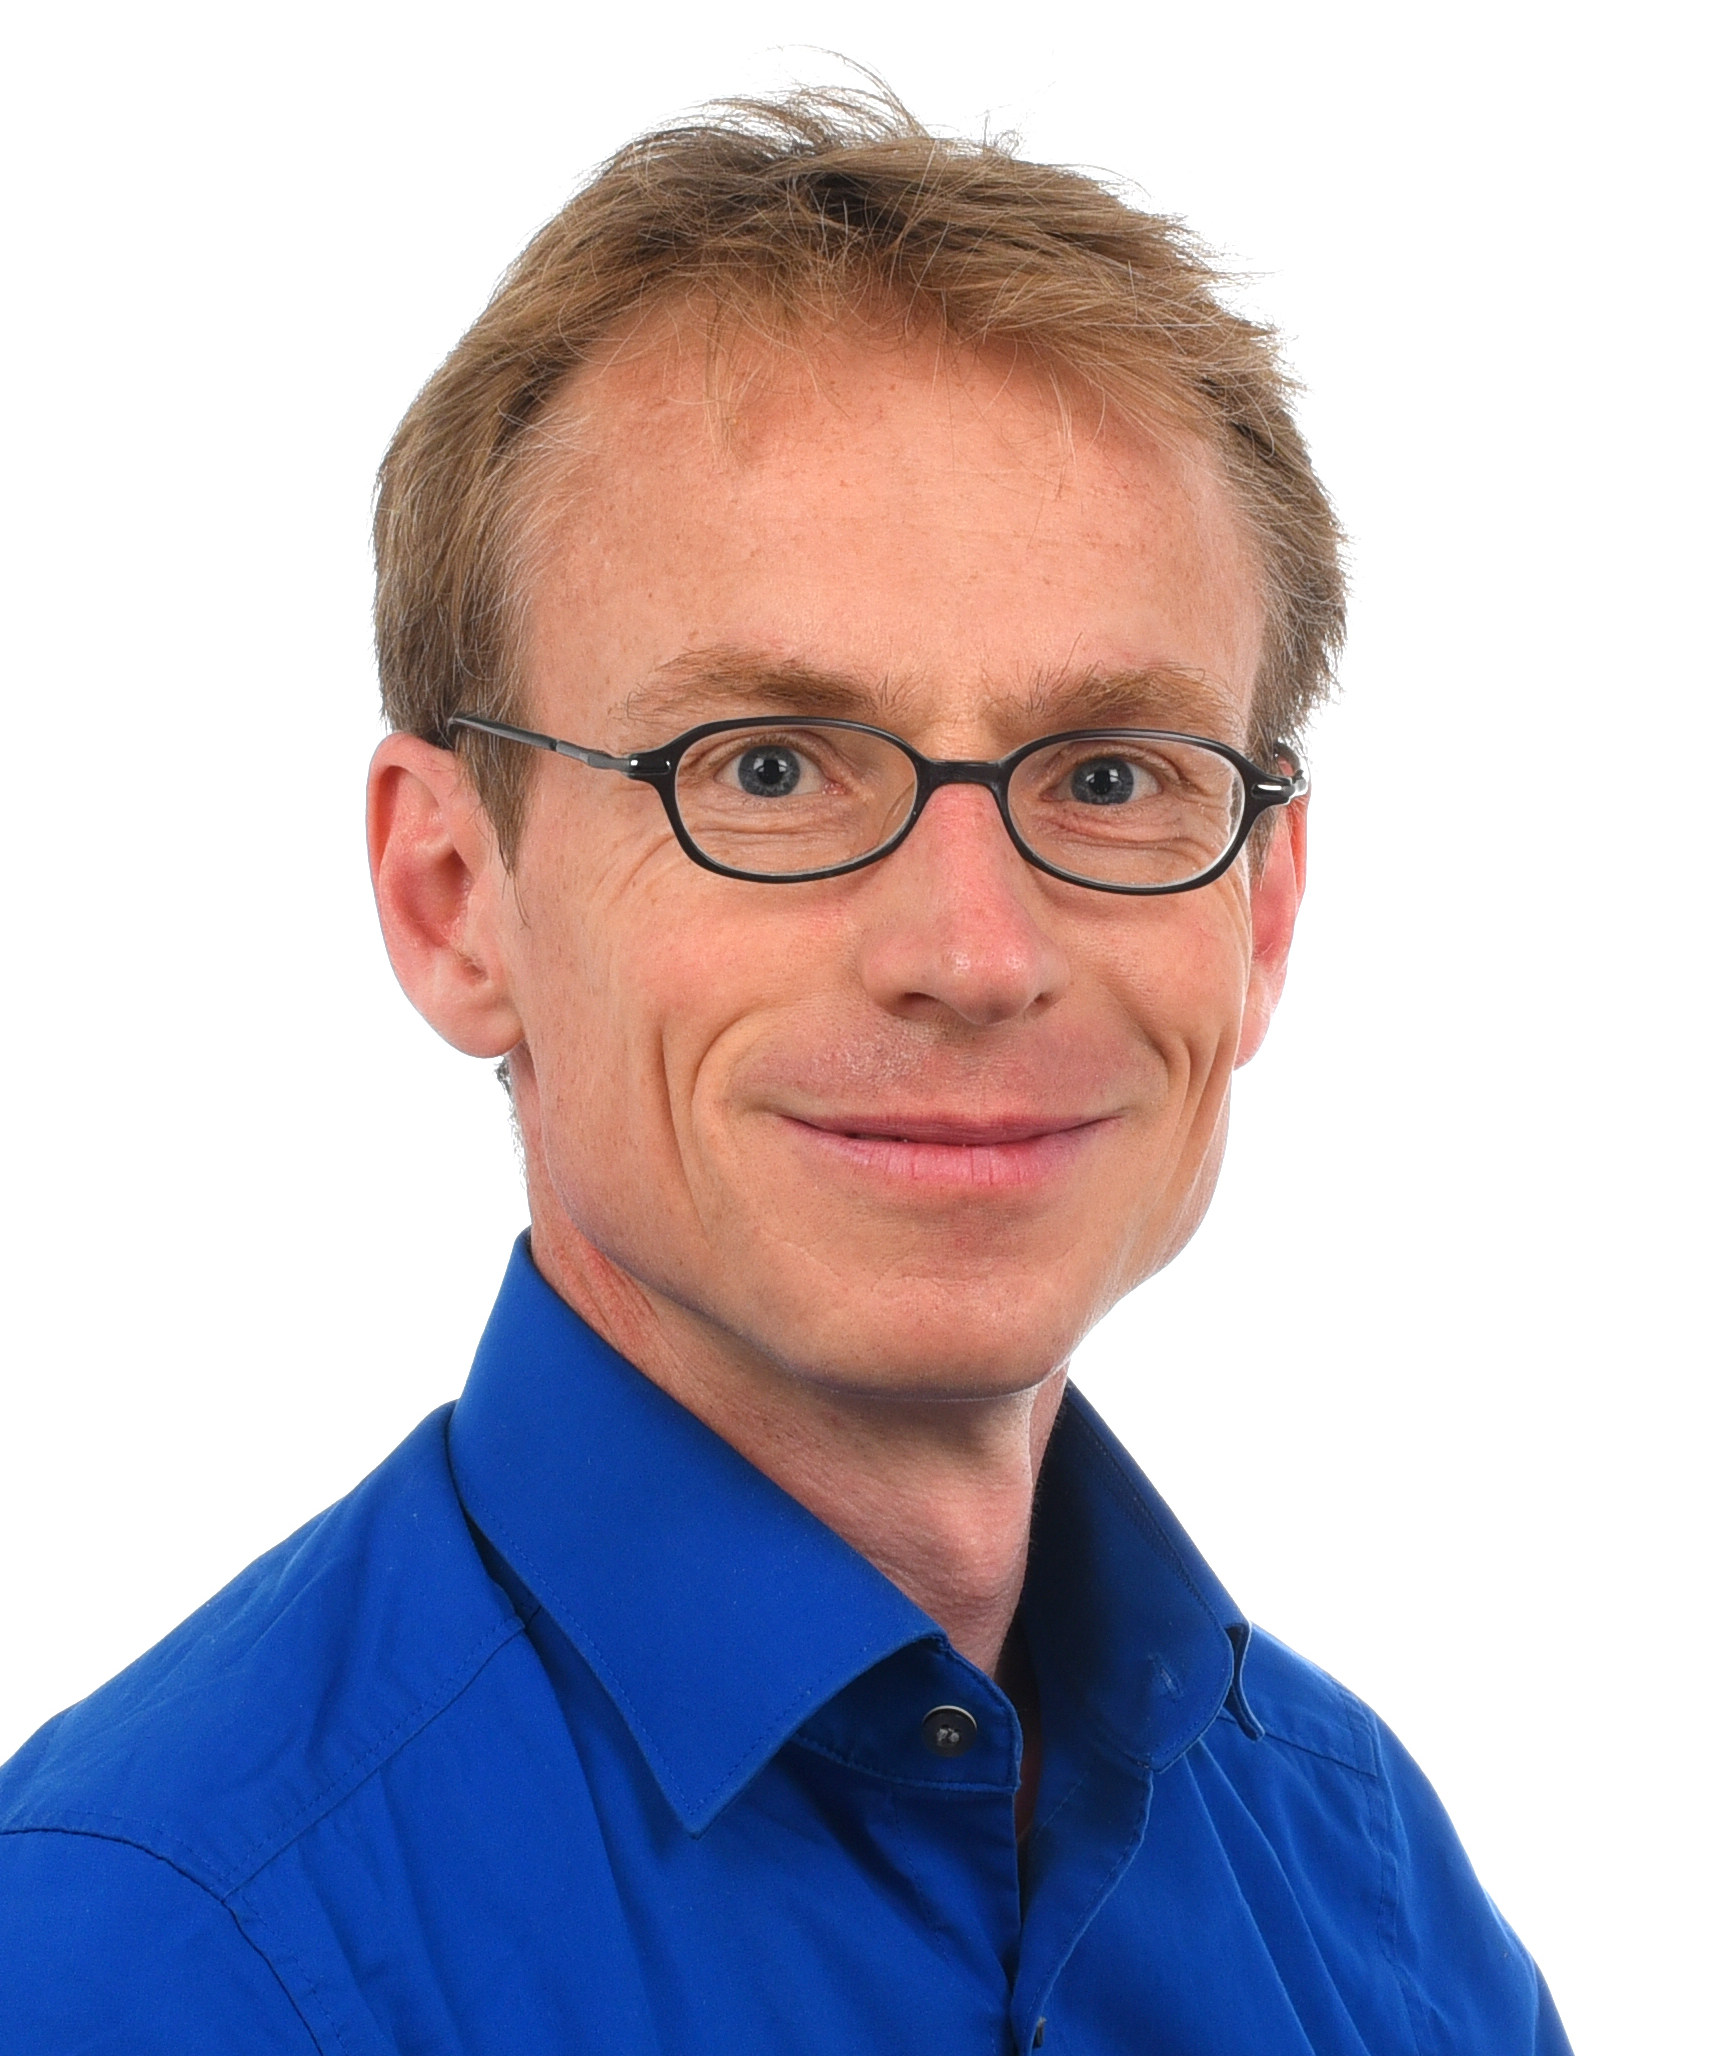 Prof. Dirk Engelmann, Ph.D.